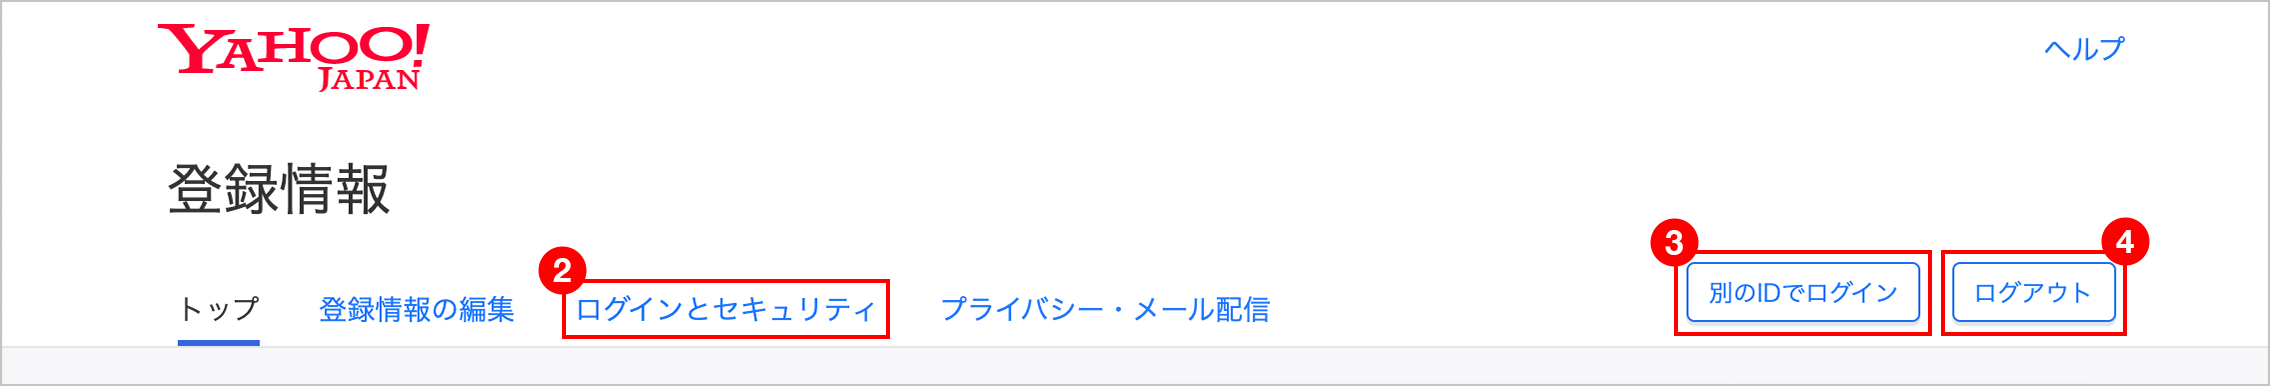 Yahoo! JAPAN ID登録情報画面